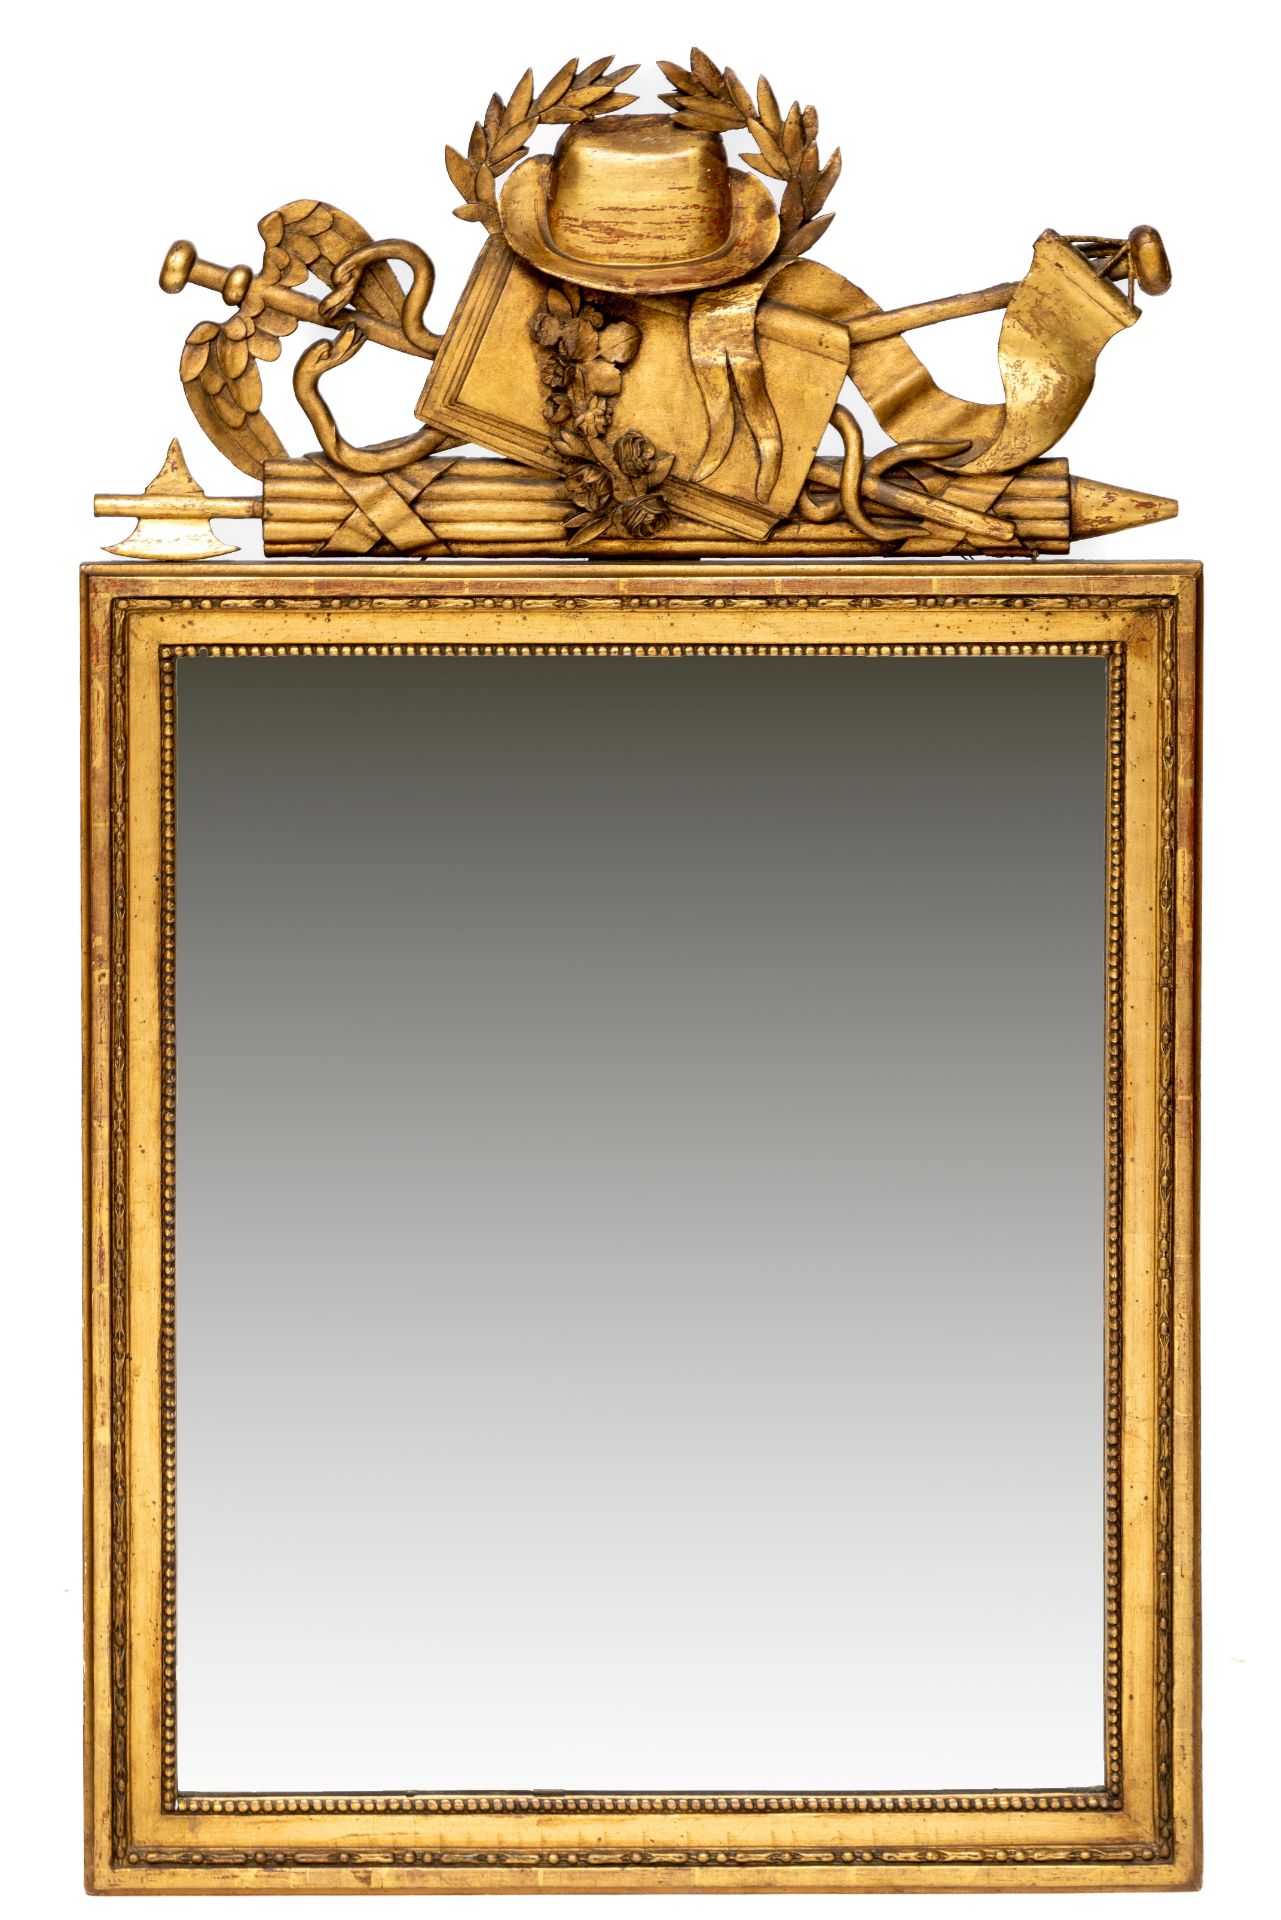 Frankrijk, rechthoekige spiegel in verguld lindenhouten lijst, Louis XVI, 18e eeuw,